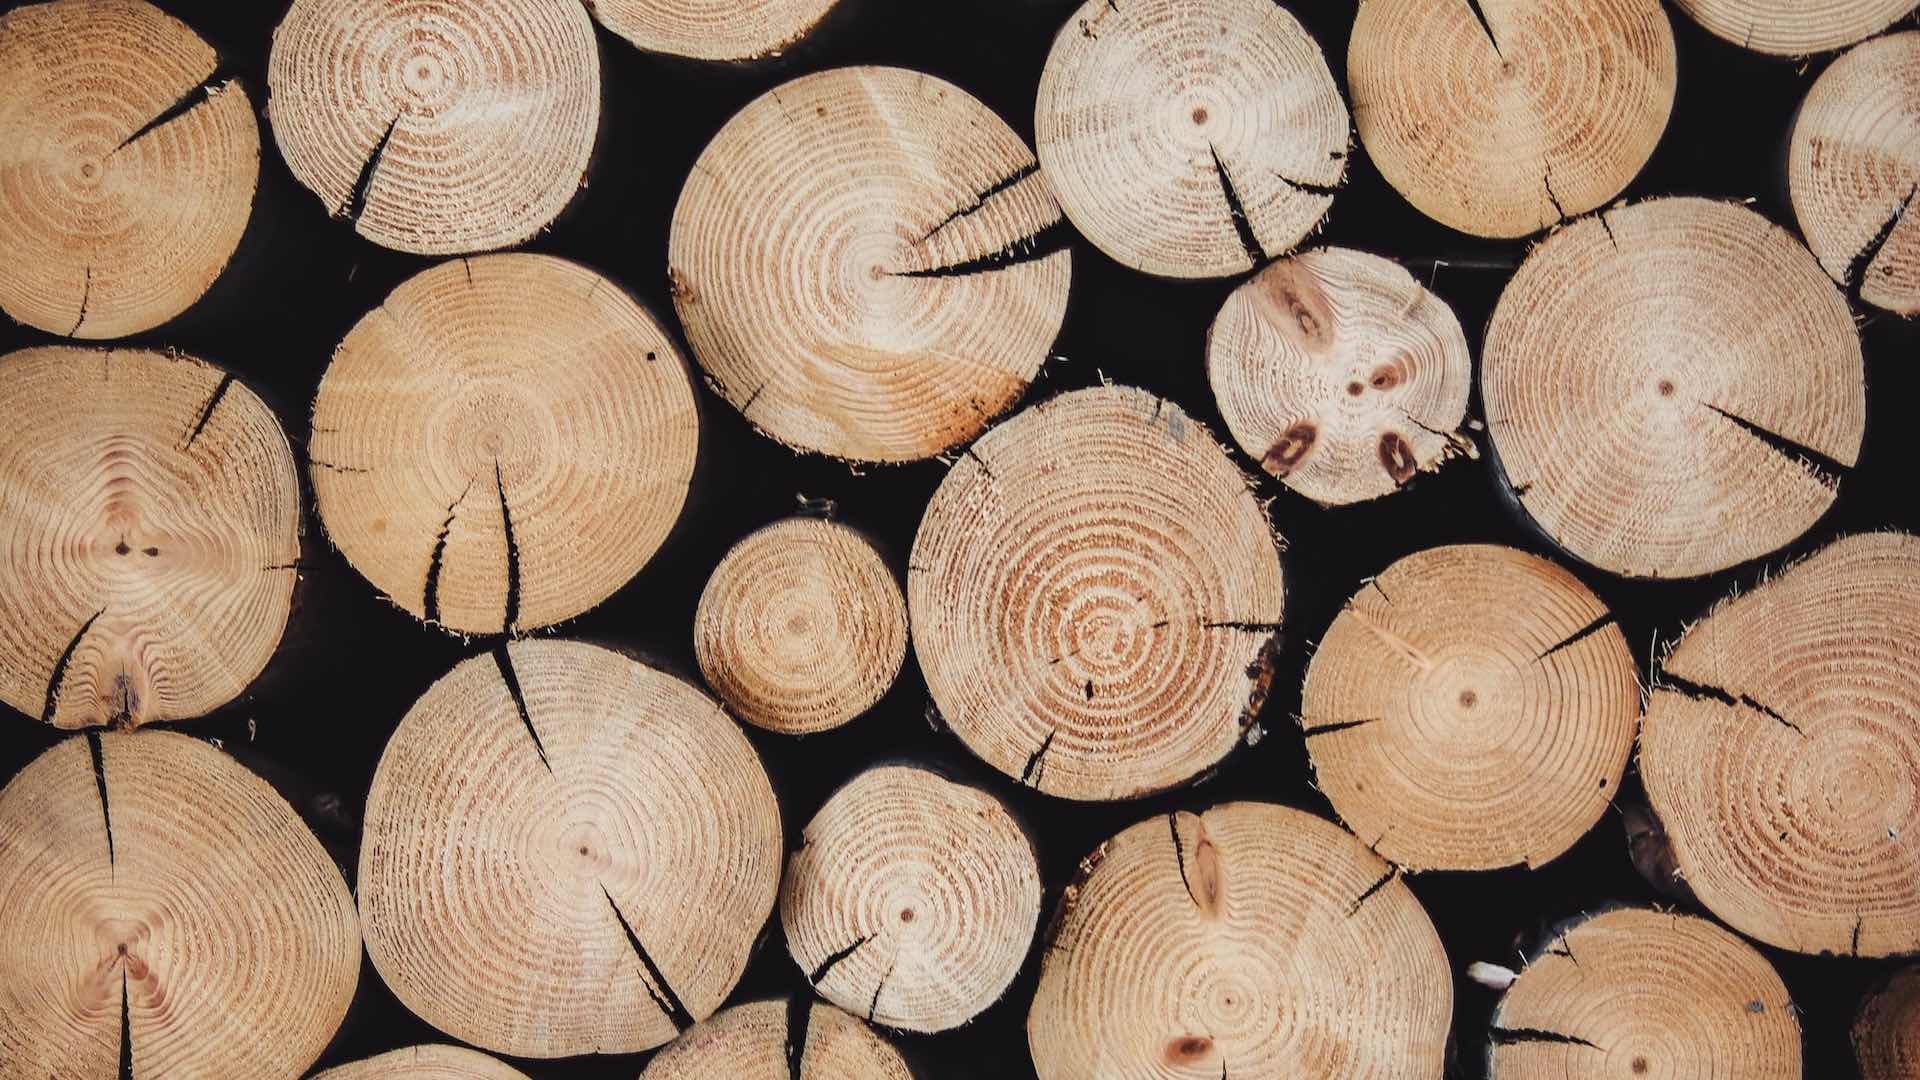 Анализ ДНК деревьев поможет бороться с незаконной добычей древесины